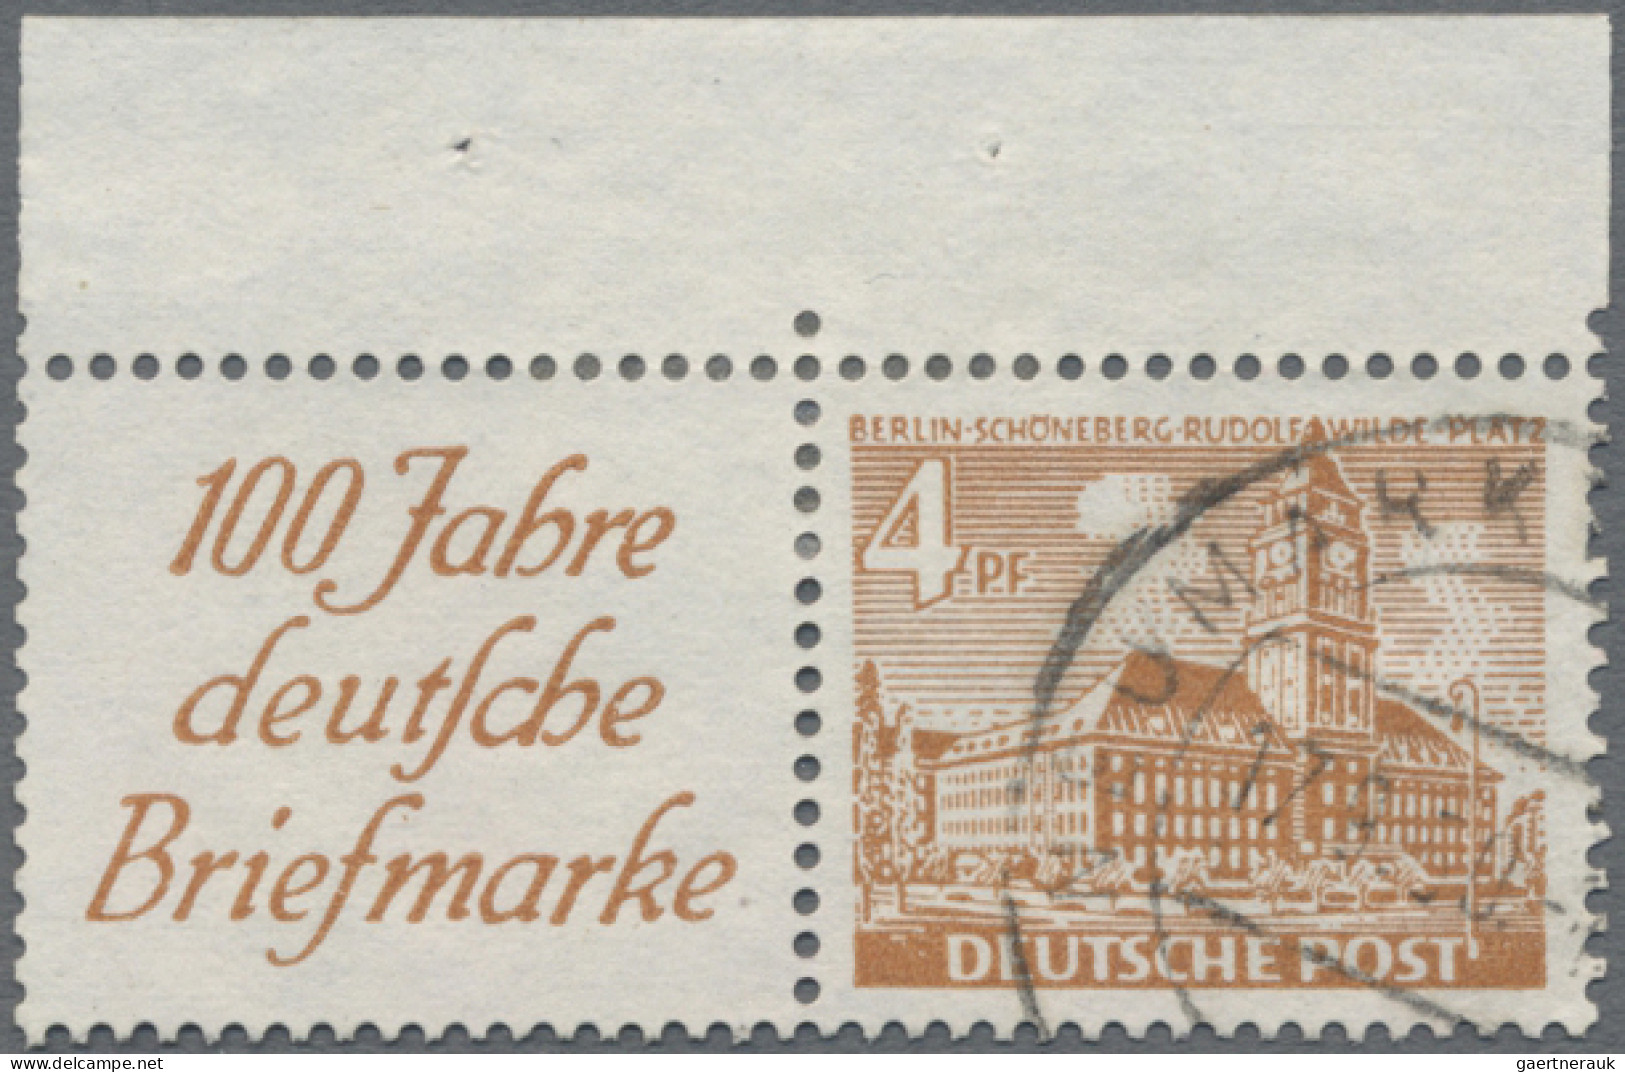 Berlin: 1948/1990, Sammlung postfrisch (teils auch gestempelt) gesammelt mit Blo